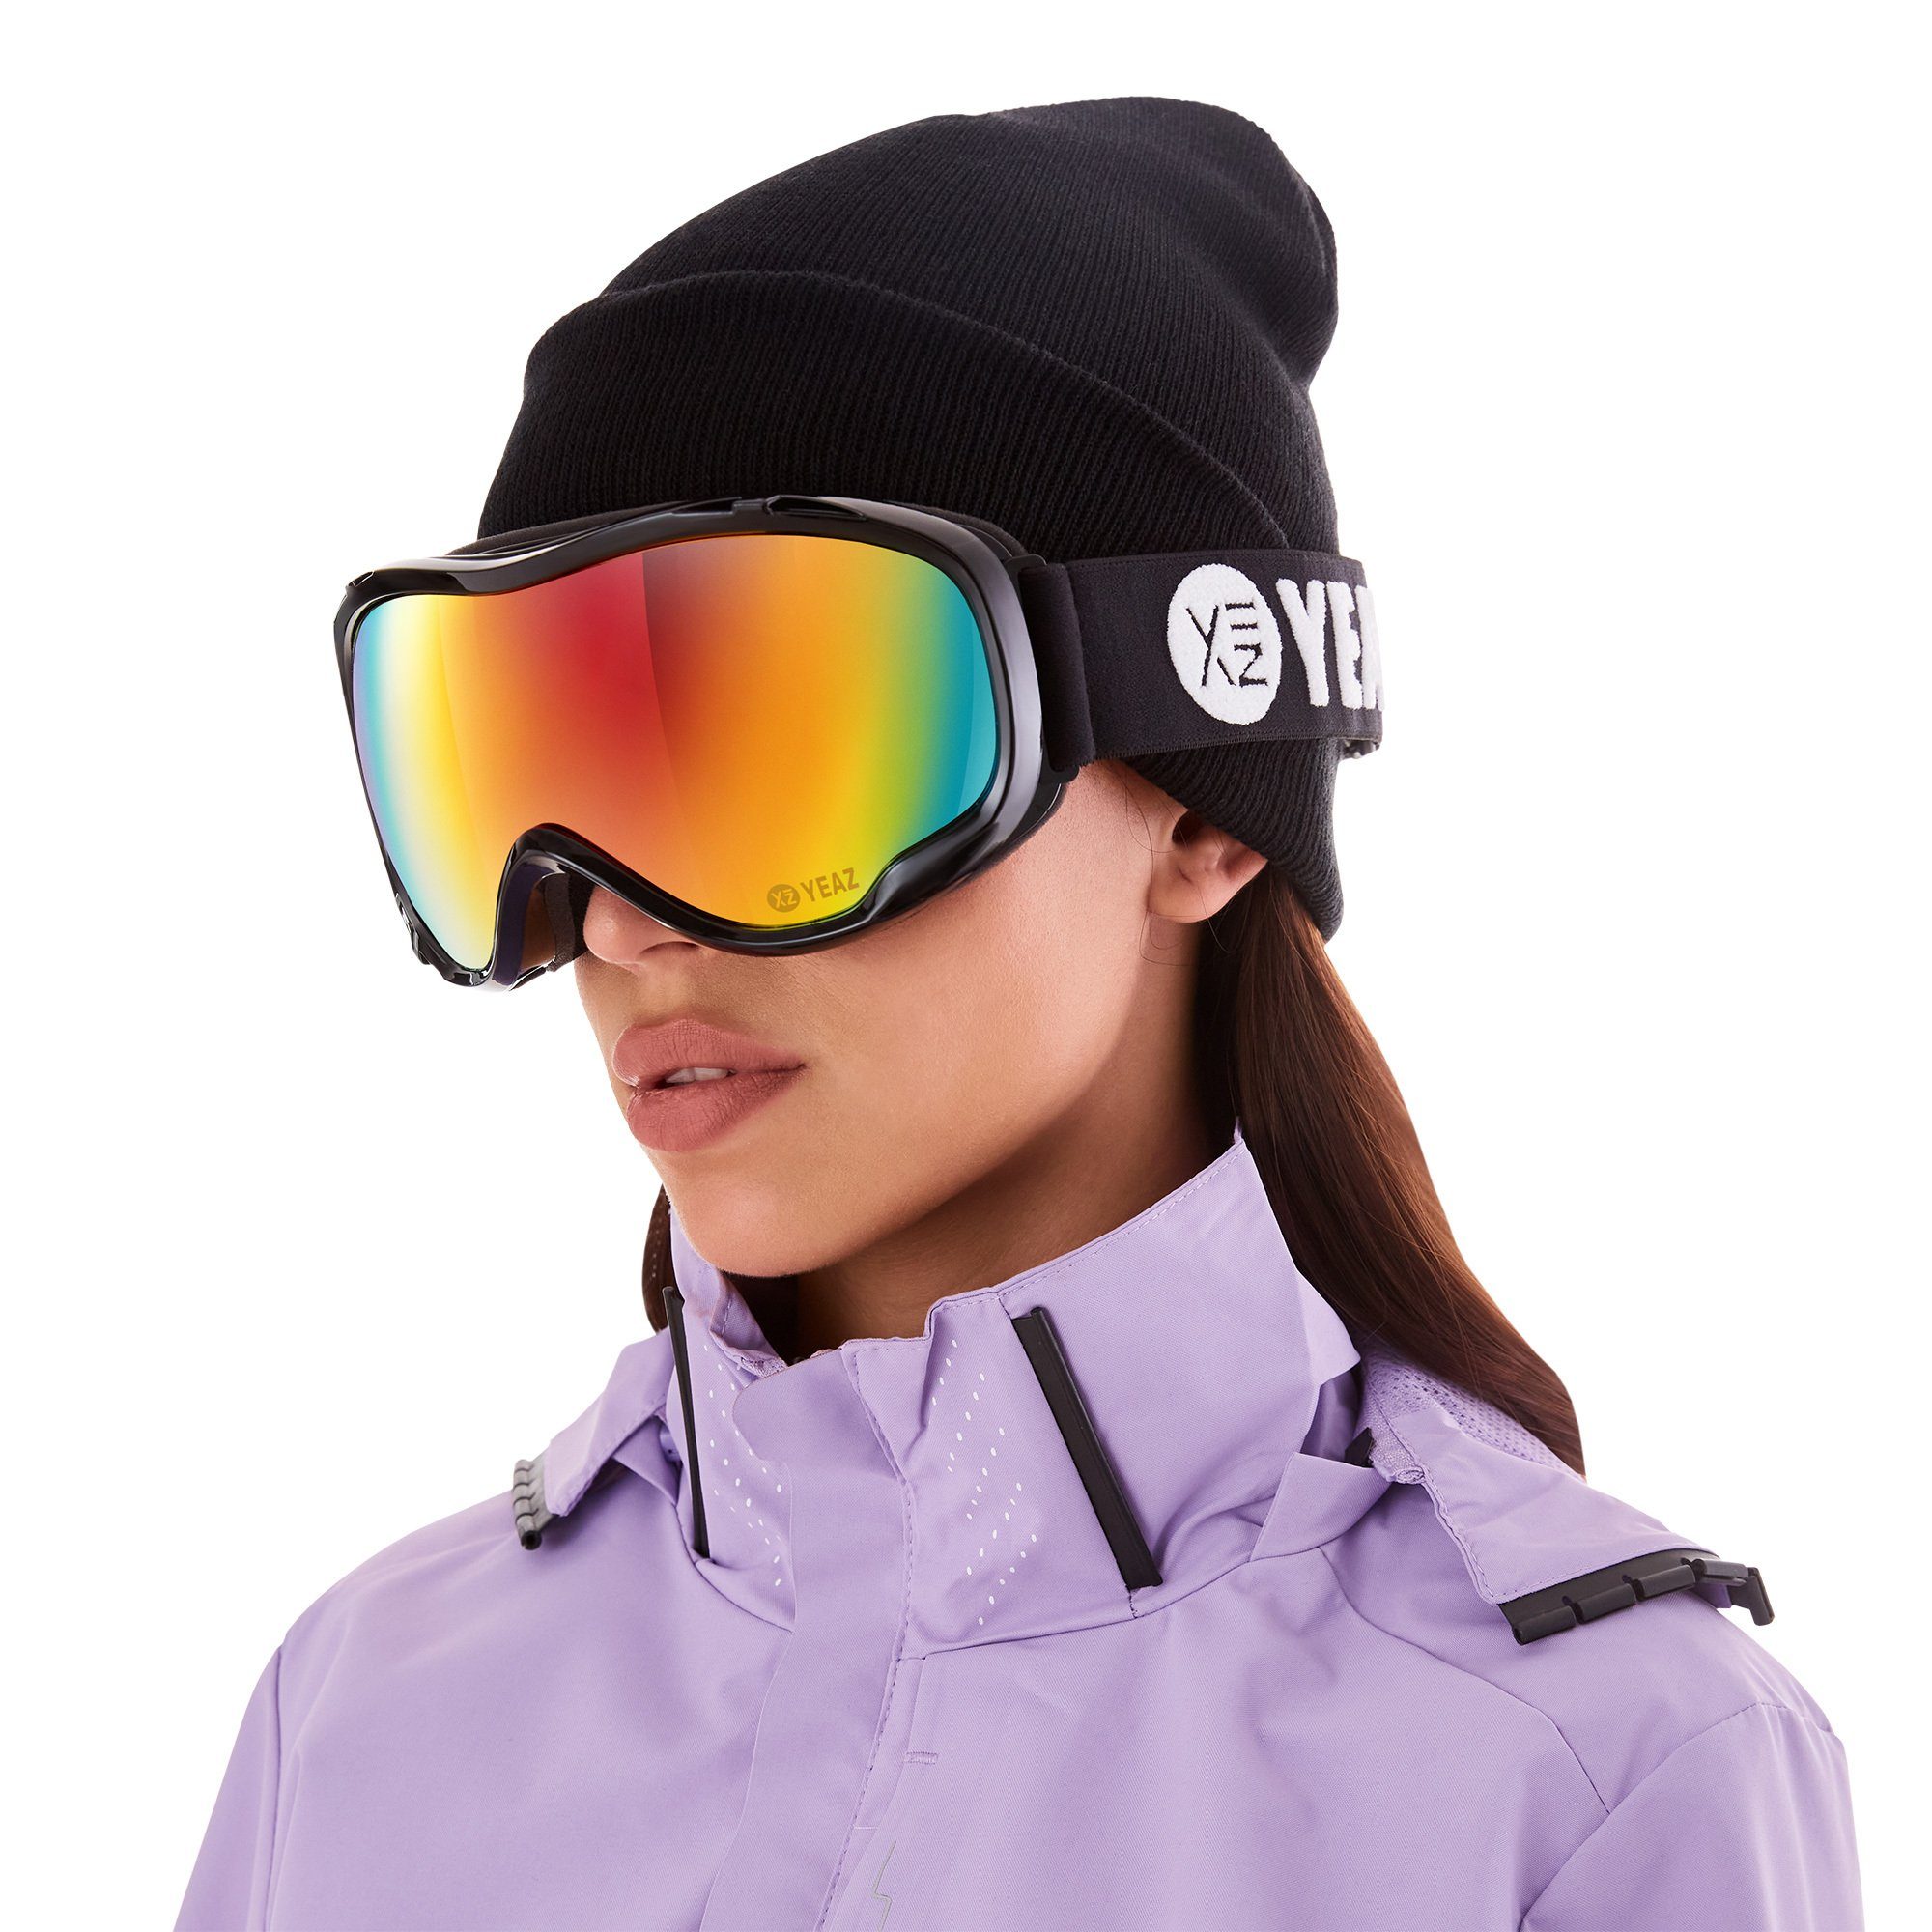 YEAZ Skibrille und Erwachsene Premium-Ski- ski- schwarz, Jugendliche und Snowboardbrille für CLIFF snowboardbrille